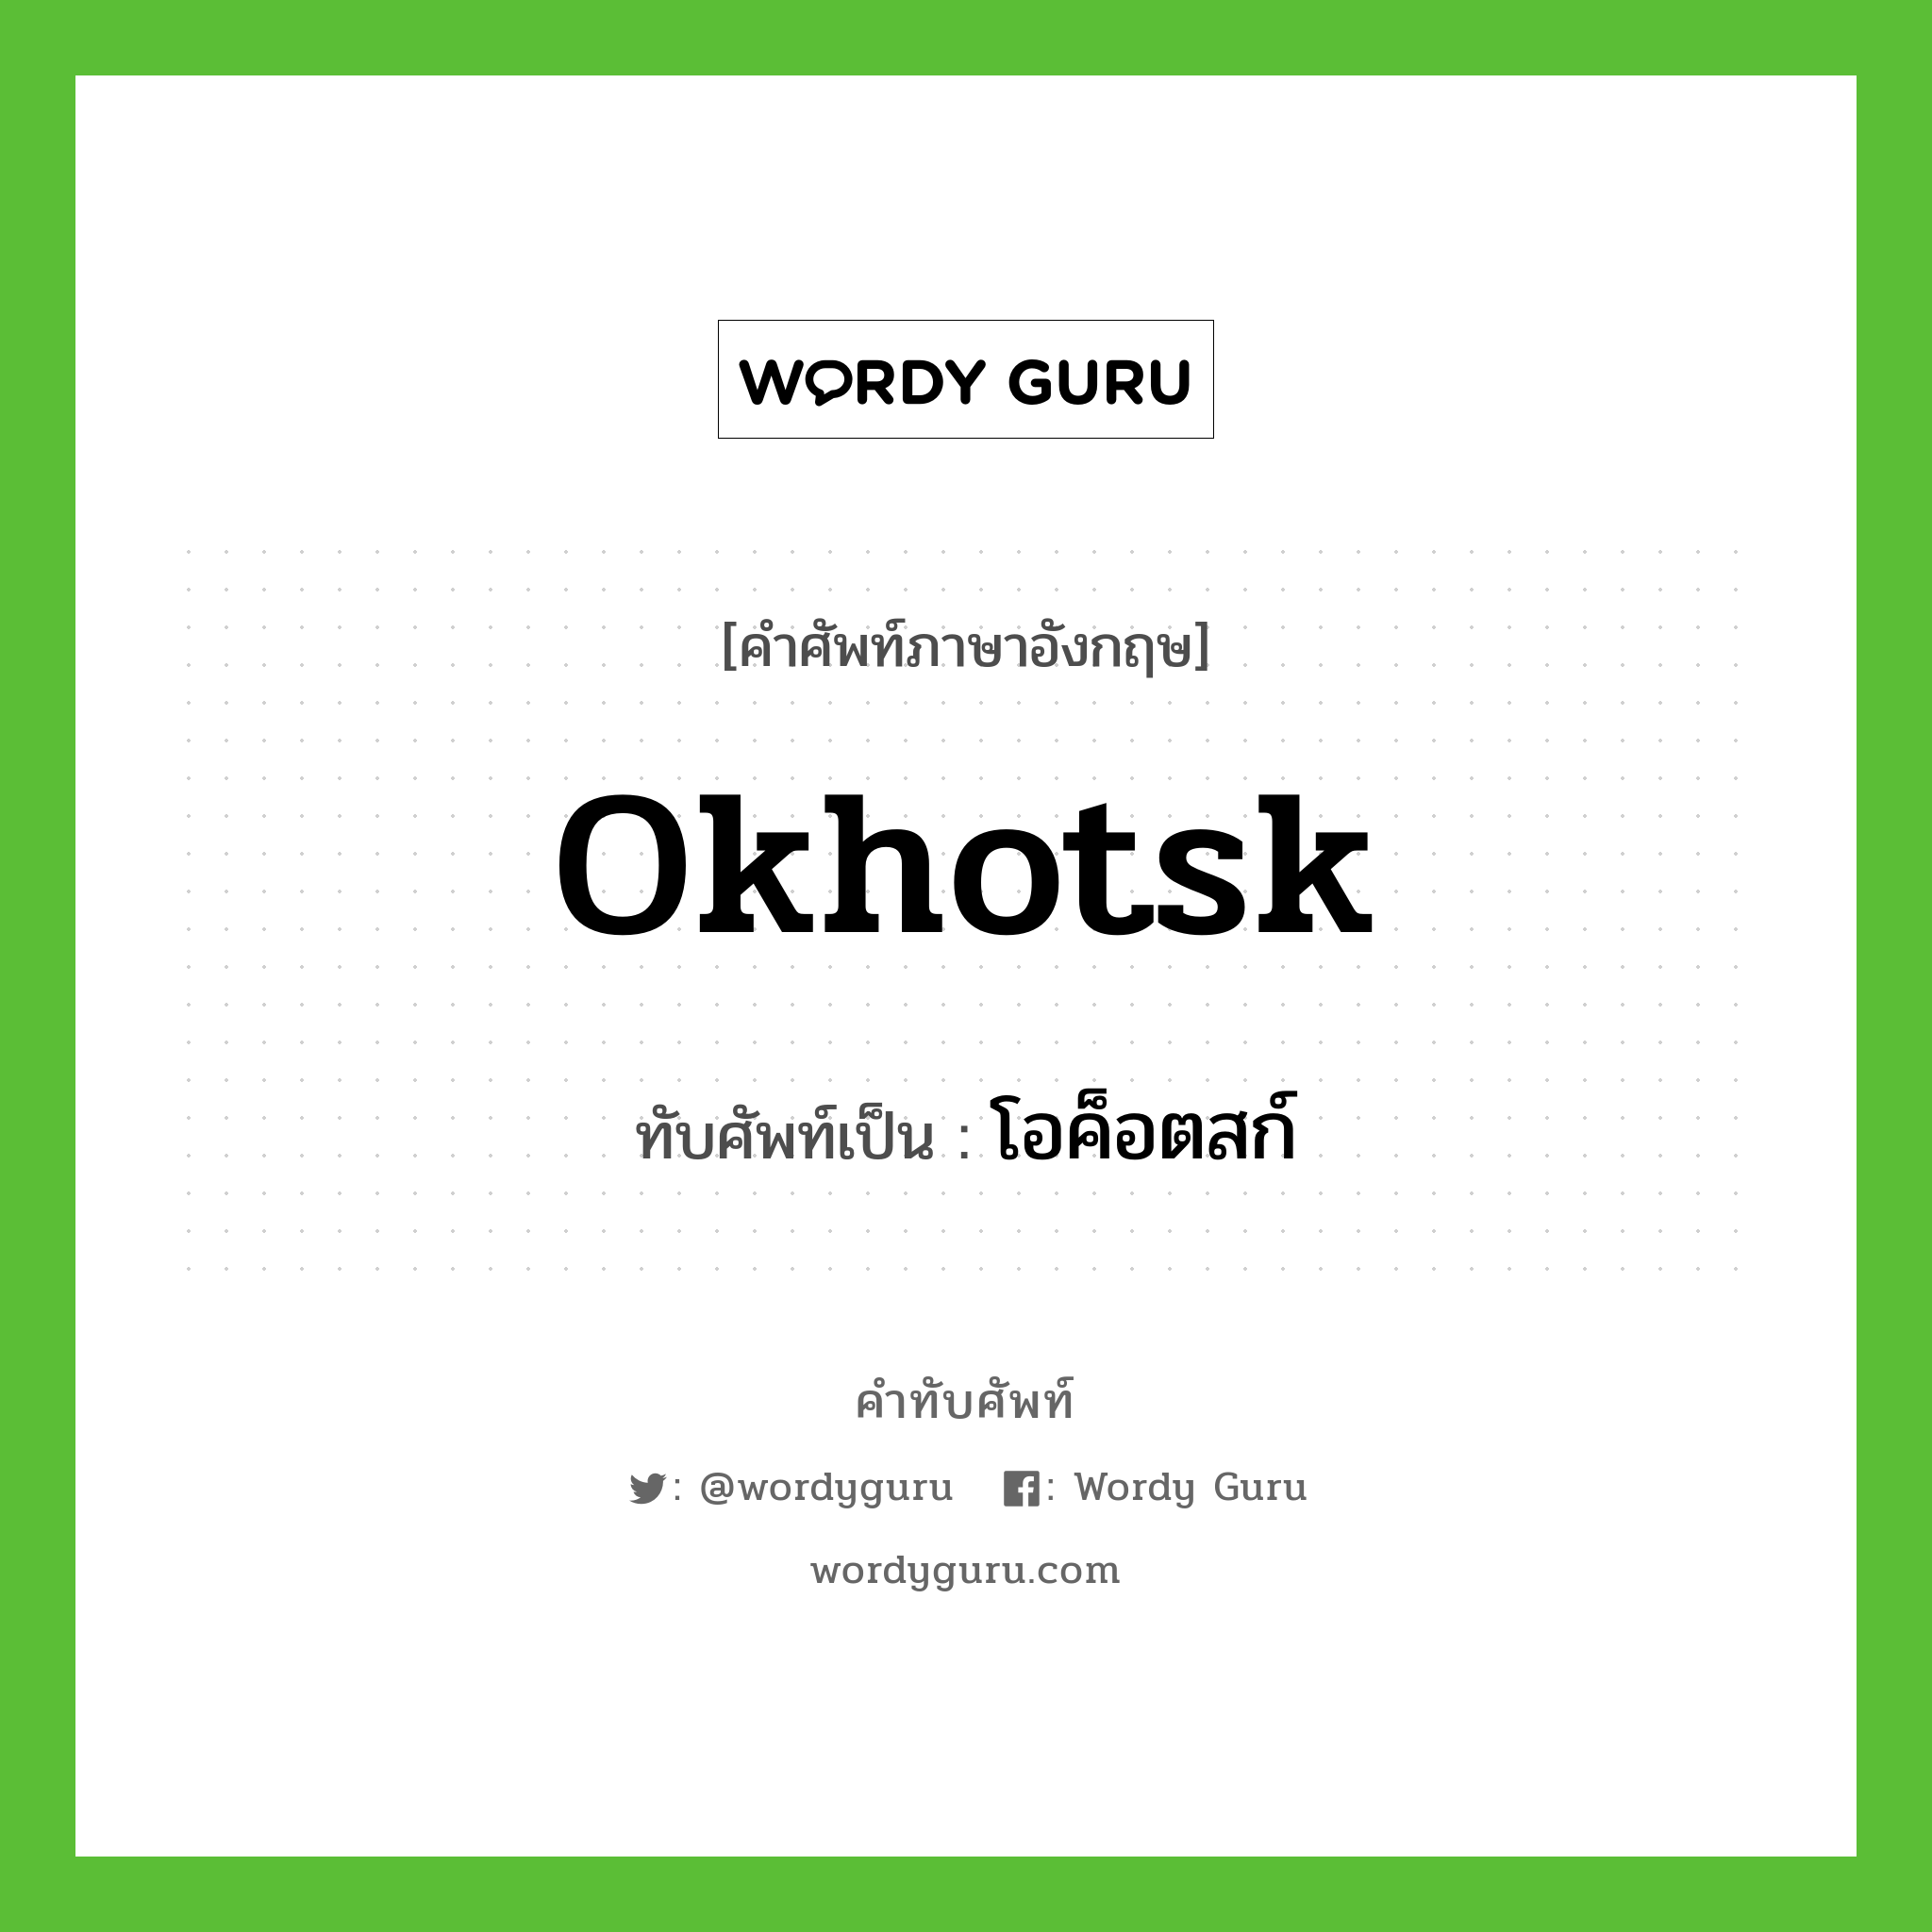 Okhotsk เขียนเป็นคำไทยว่าอะไร?, คำศัพท์ภาษาอังกฤษ Okhotsk ทับศัพท์เป็น โอค็อตสก์